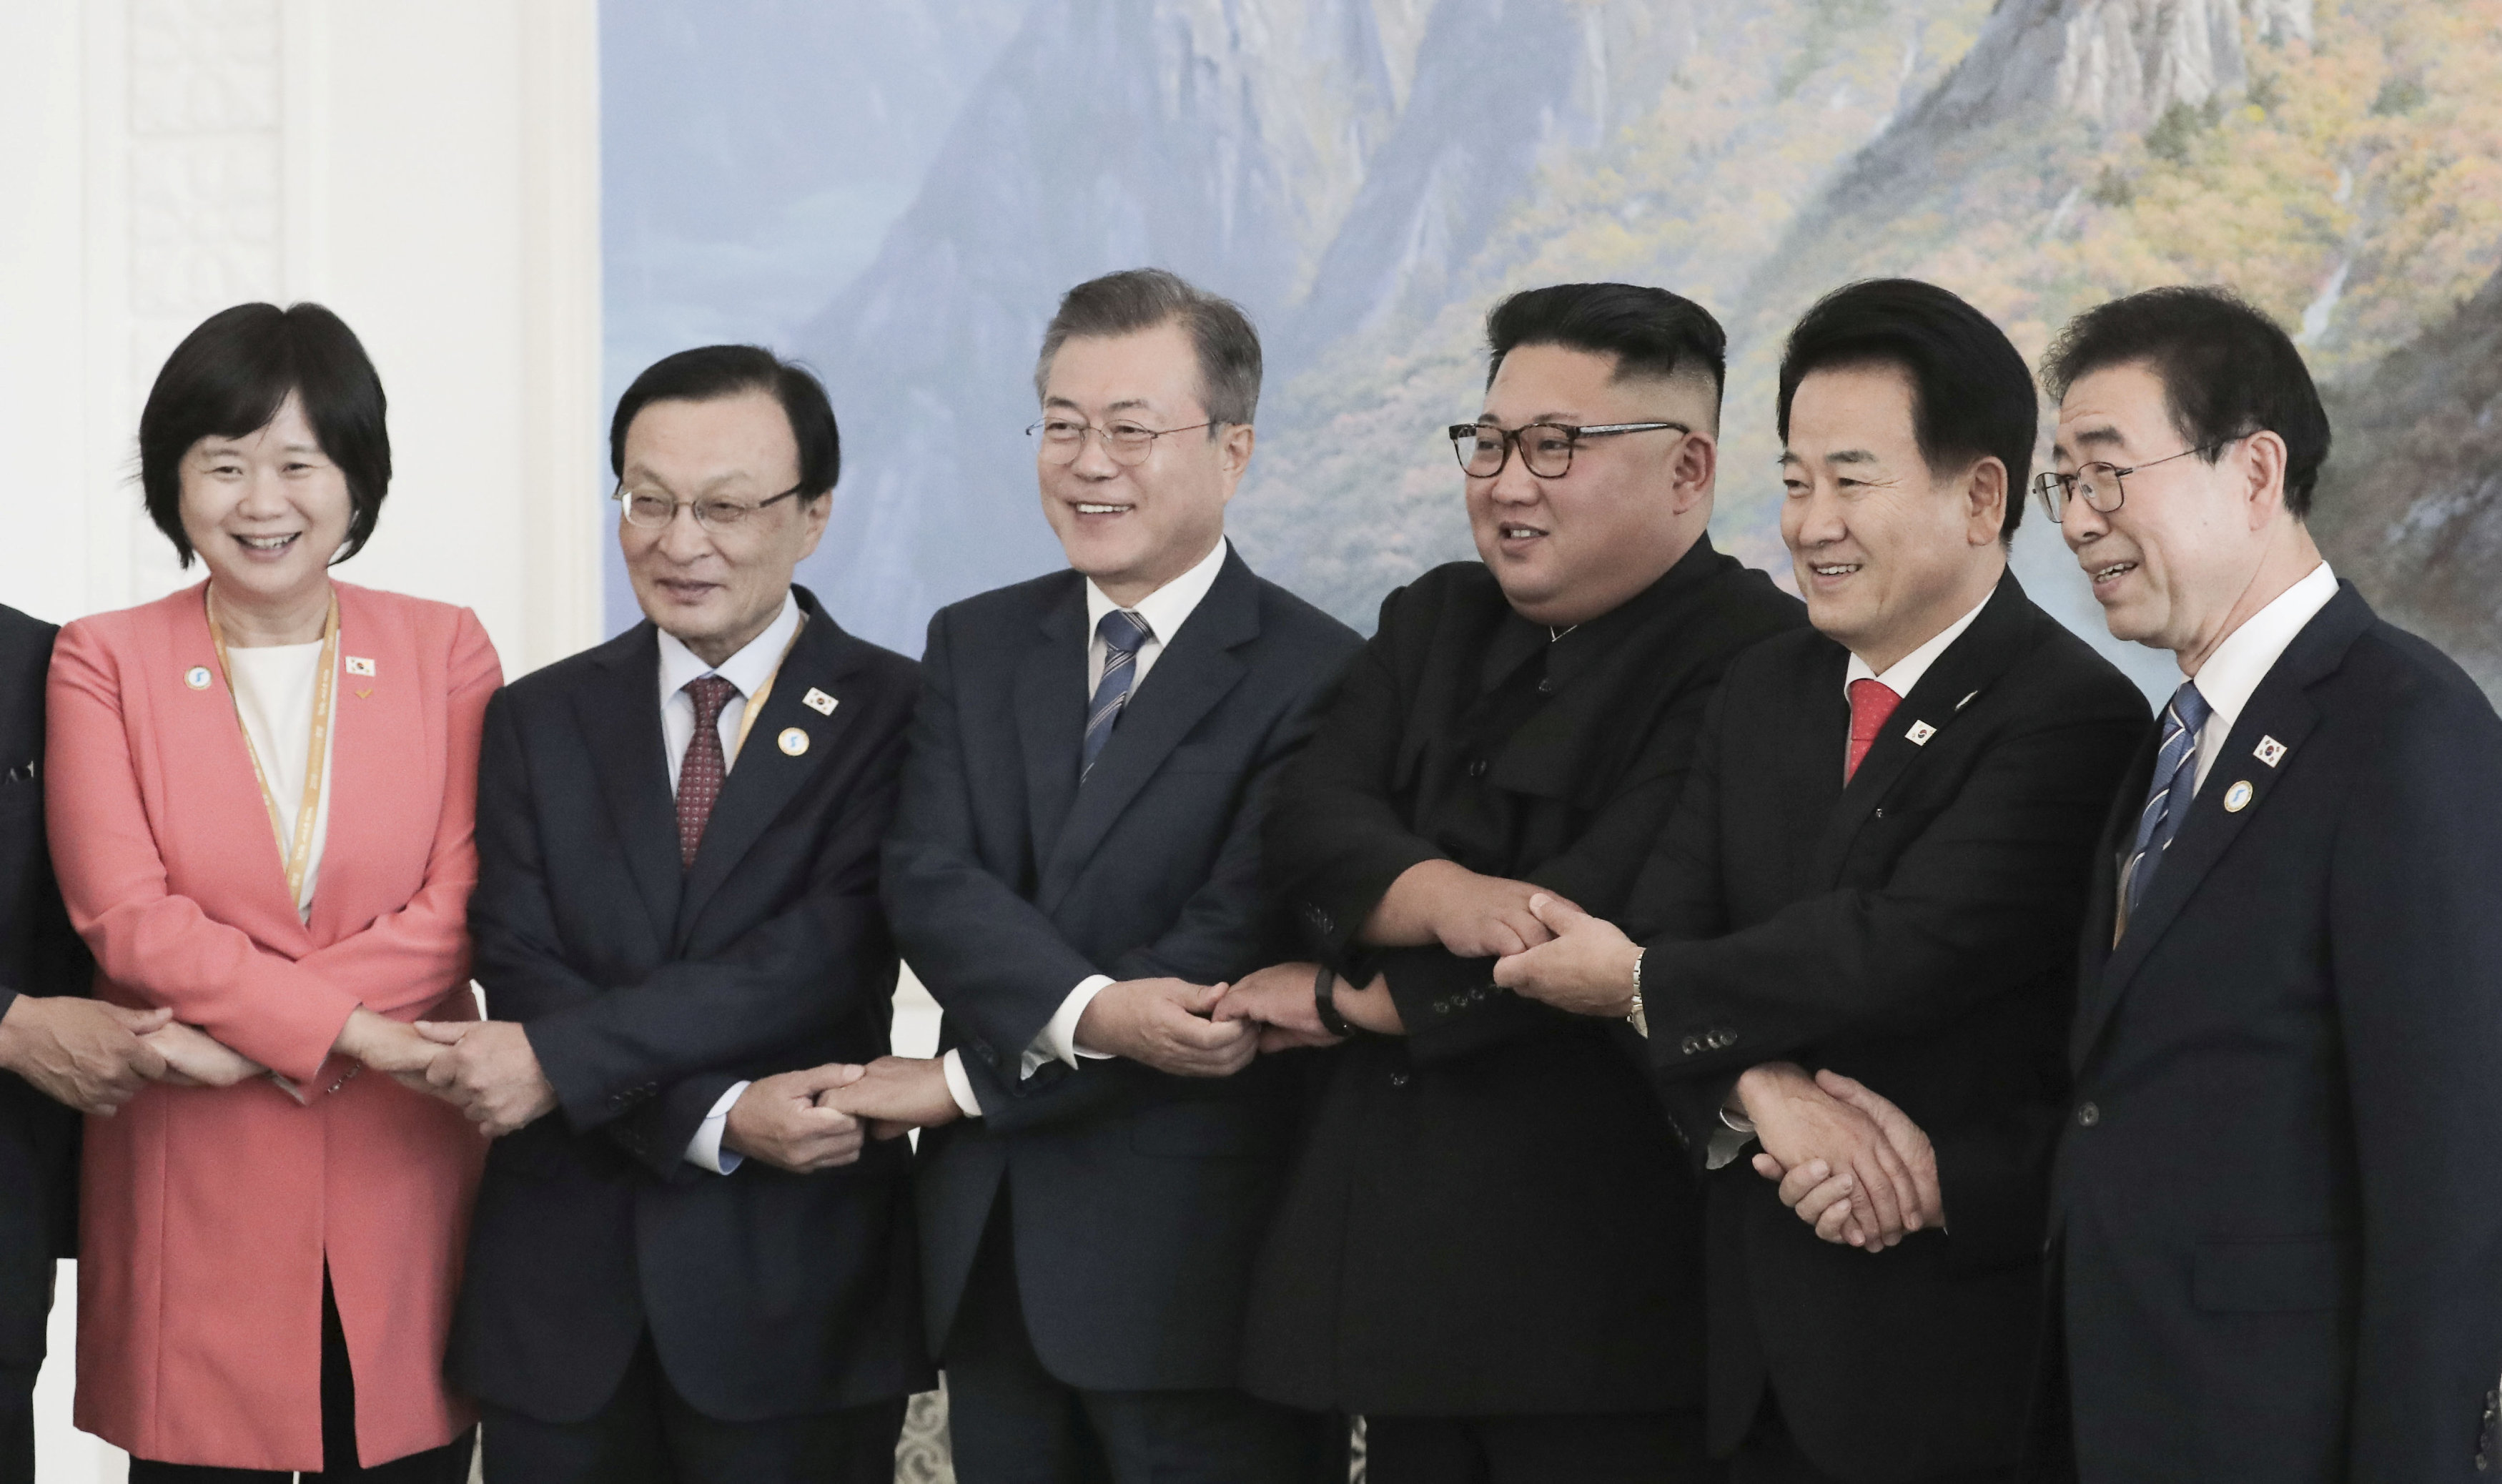 صورة تذكارية بين زعيم كوريا الشمالية والوفد الكورى الجنوبى